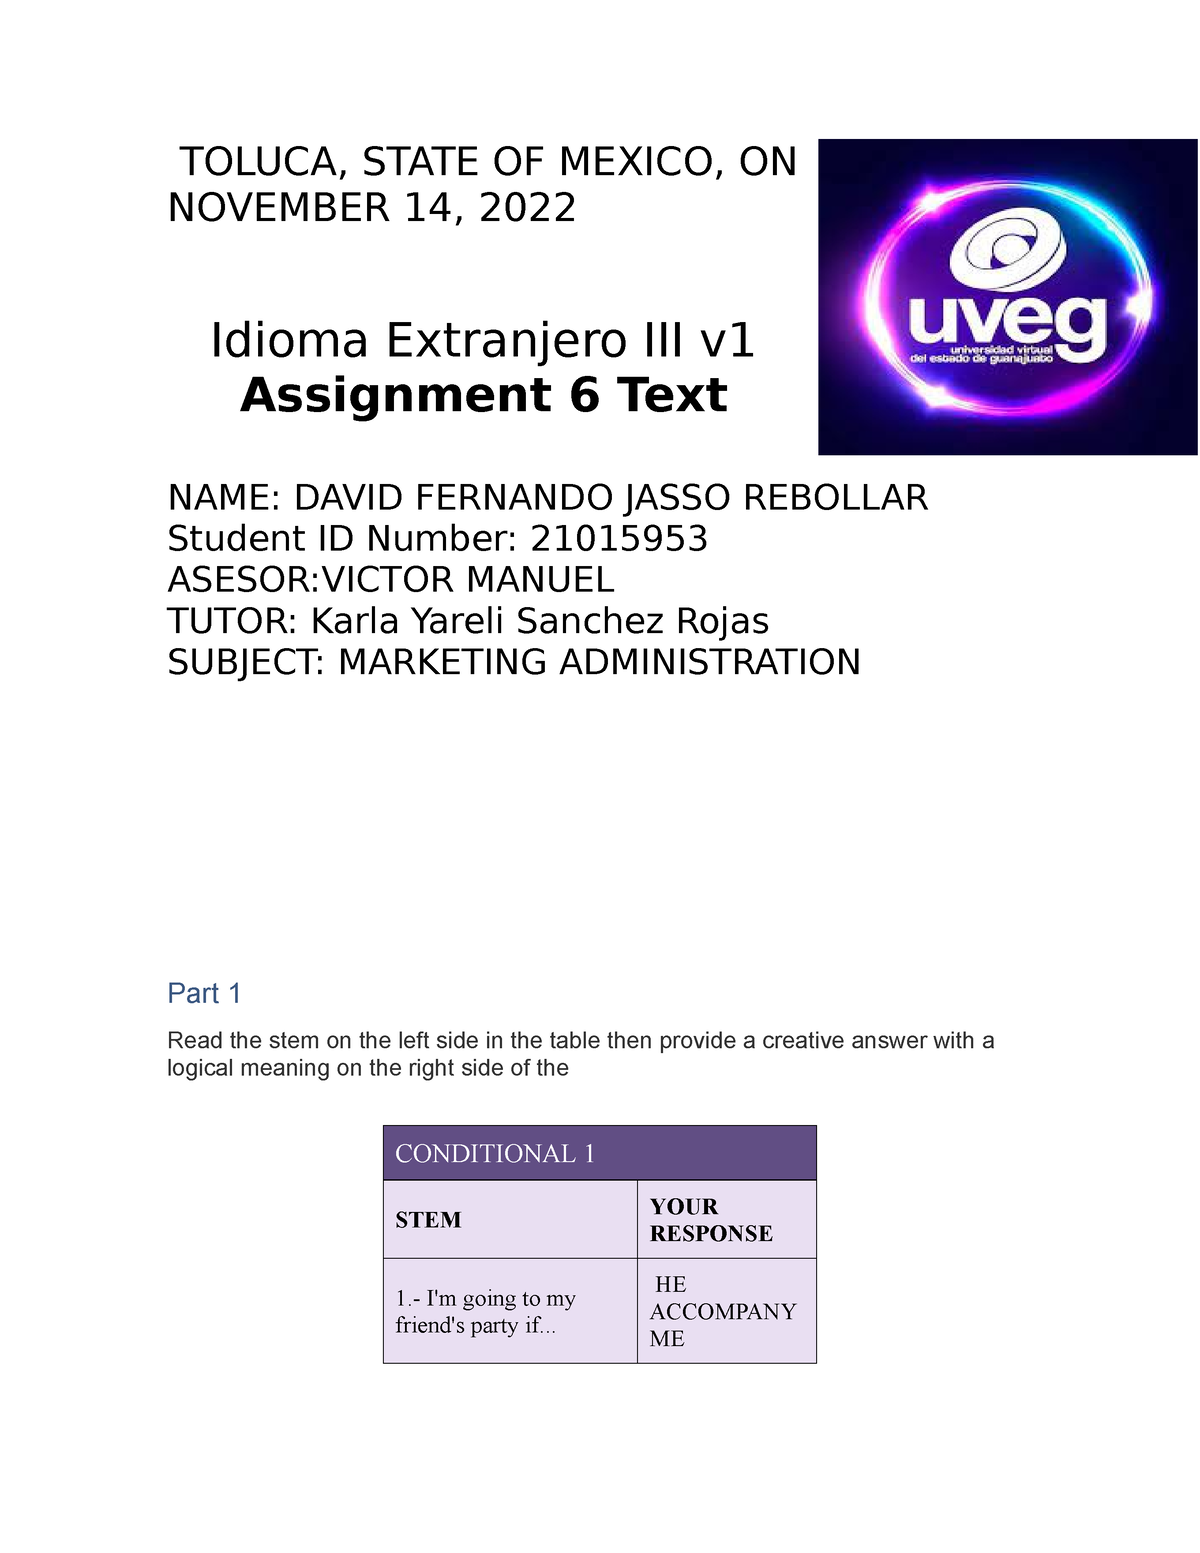 assignment 6 text idioma extranjero iii v2